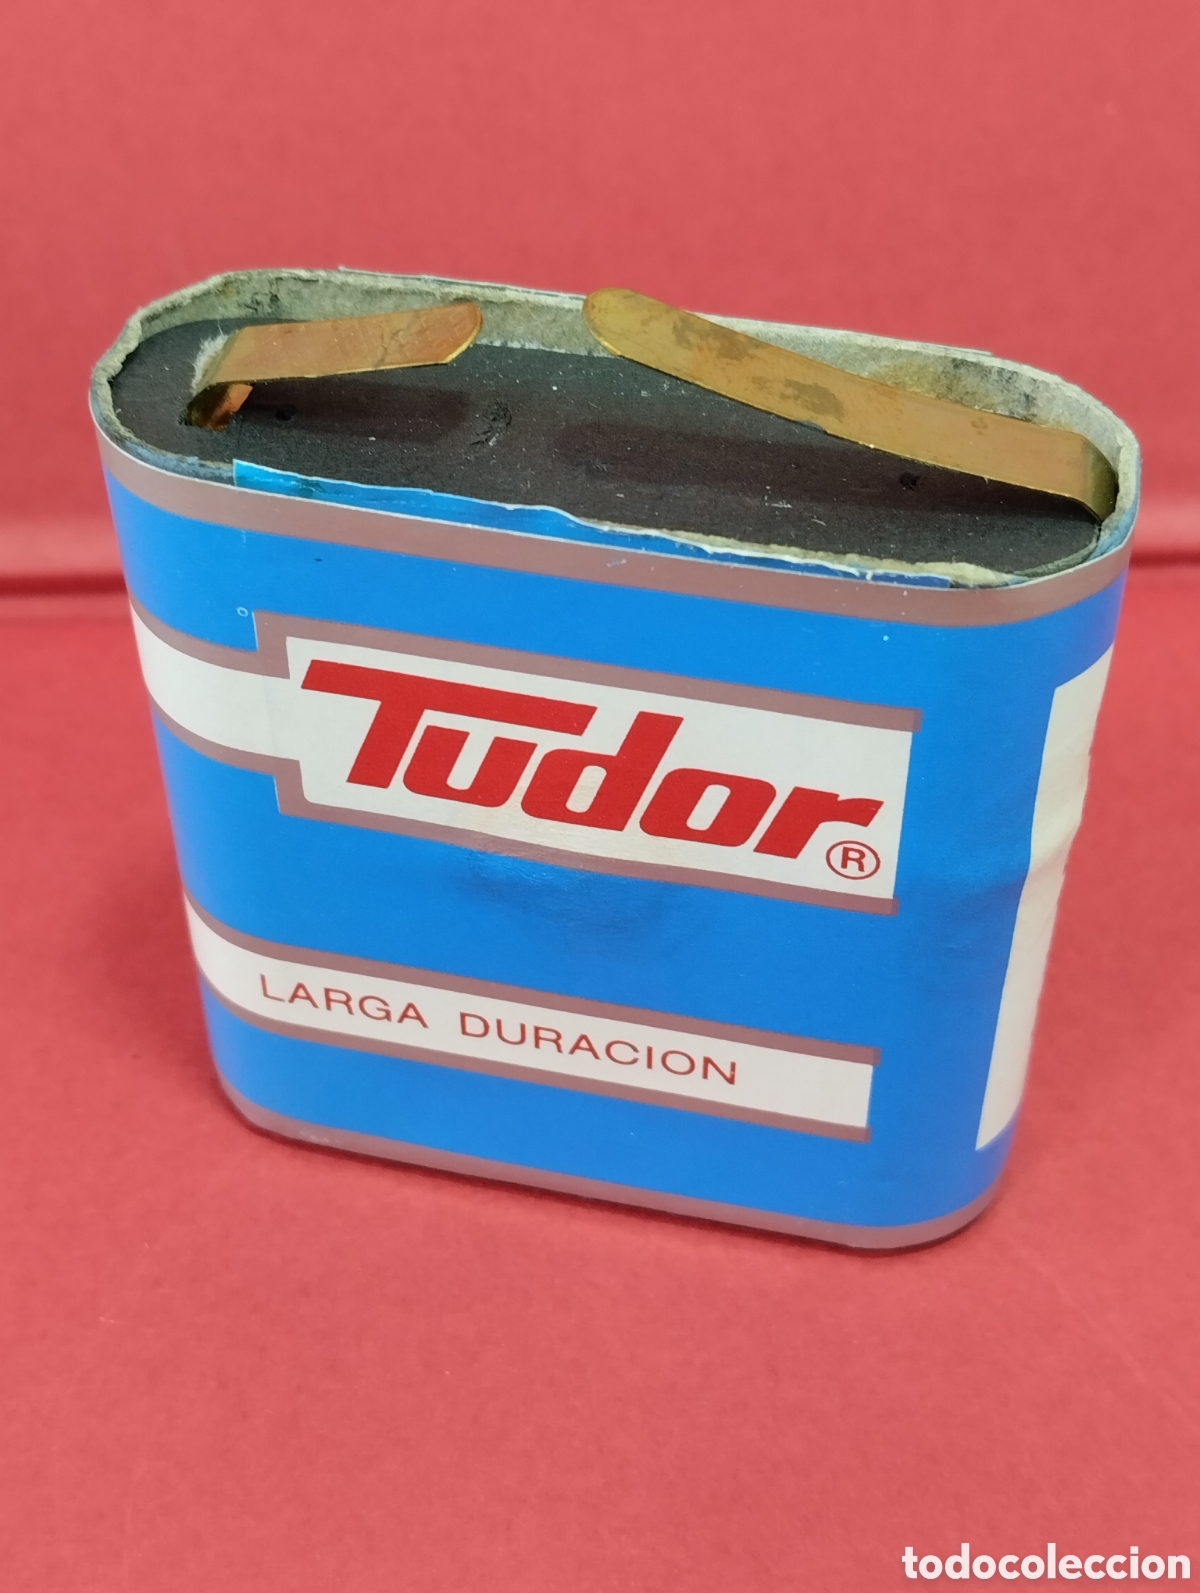 antigua pila de petaca *tudor* 4,5 voltios - Compra venta en todocoleccion